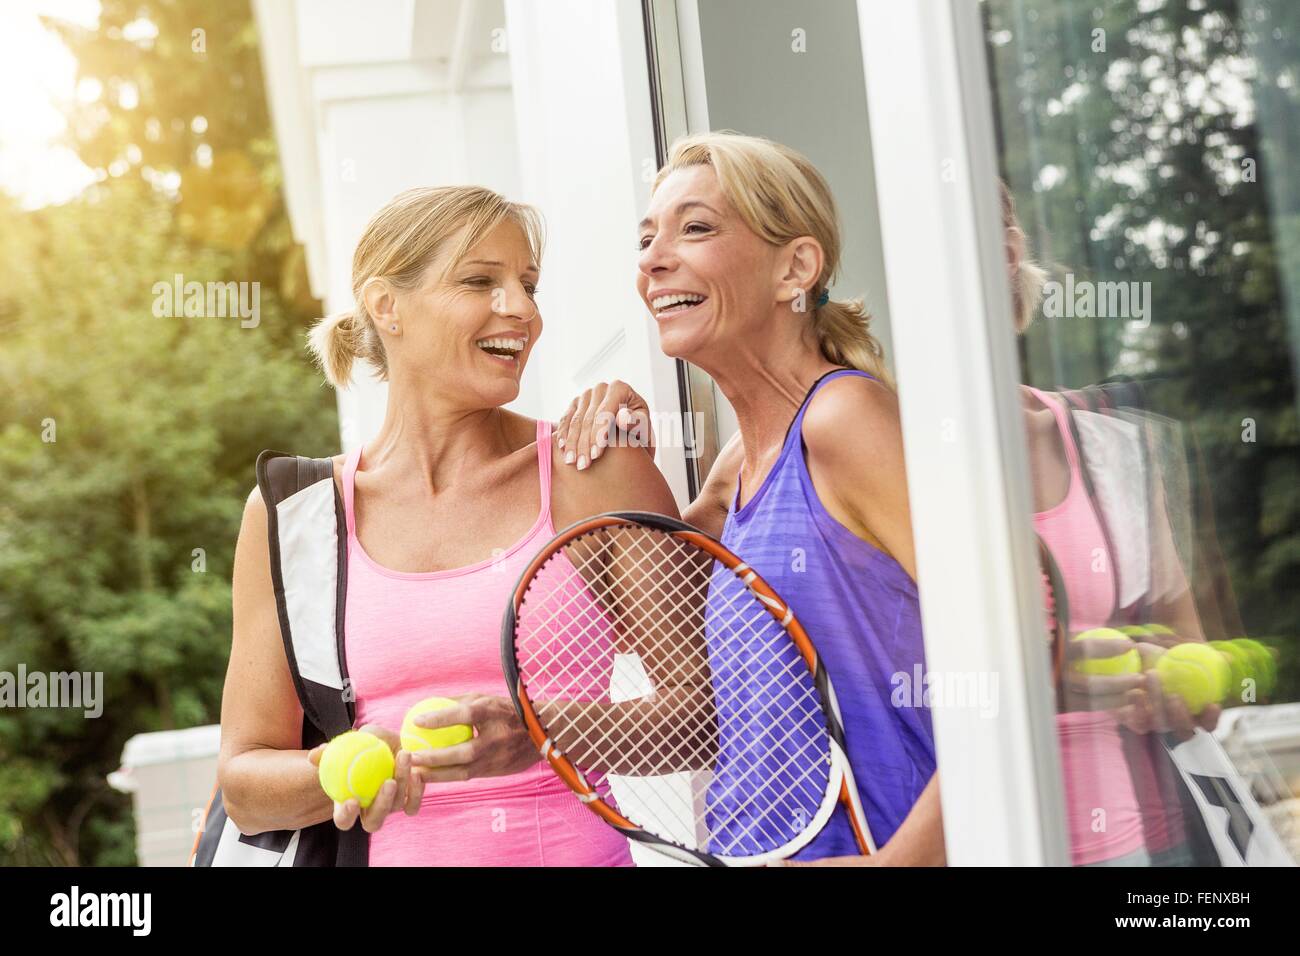 Zwei Reife Frauen spielen Sie Tennis auf Terrassentür wird vorbereitet Stockfoto